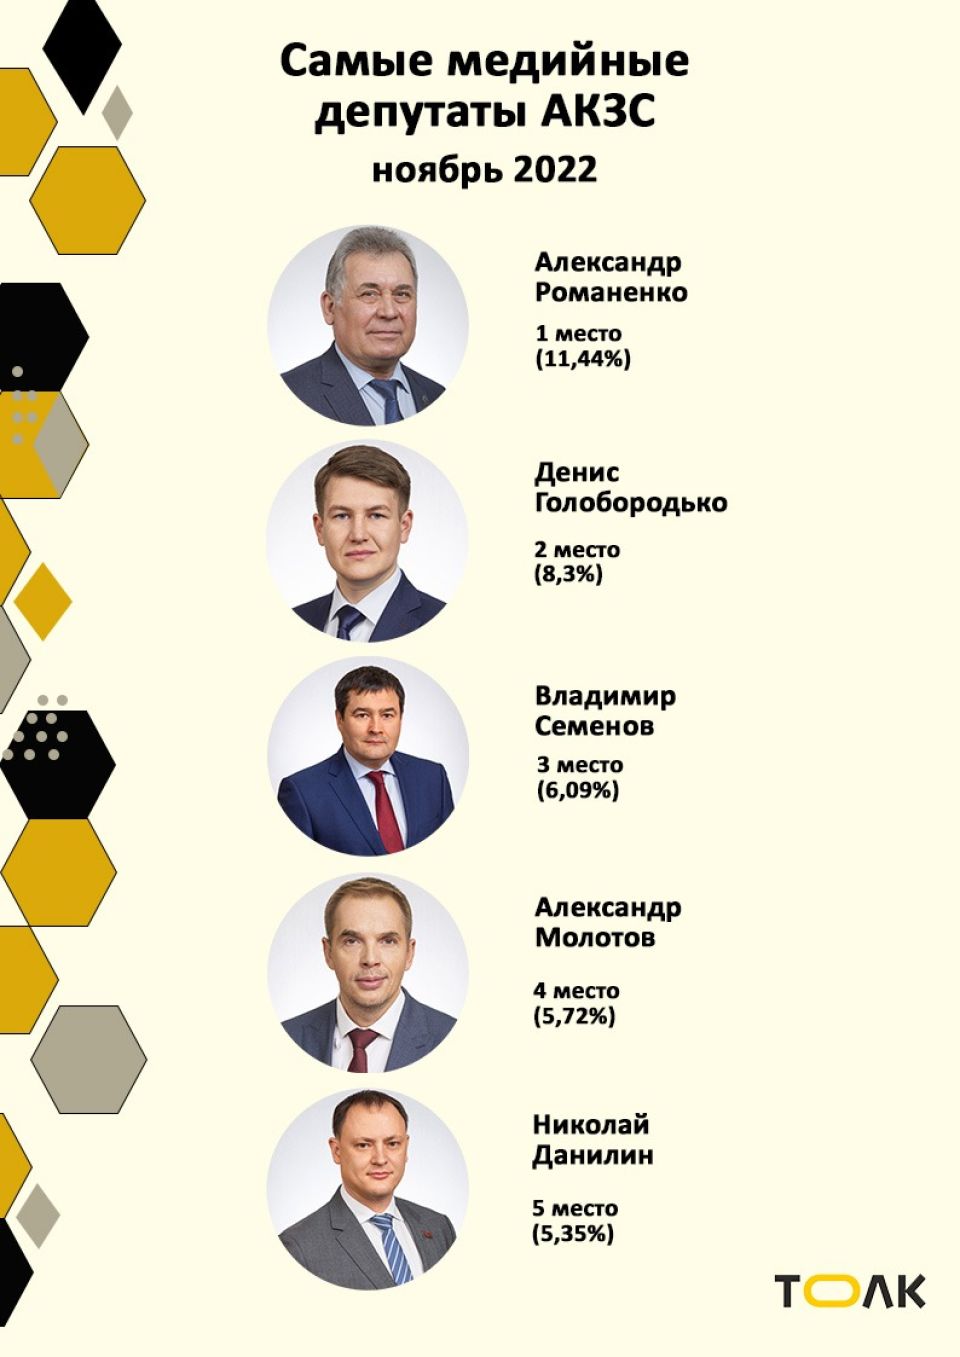 Рейтинг медийности депутатов АКЗС в ноябре 2022 года